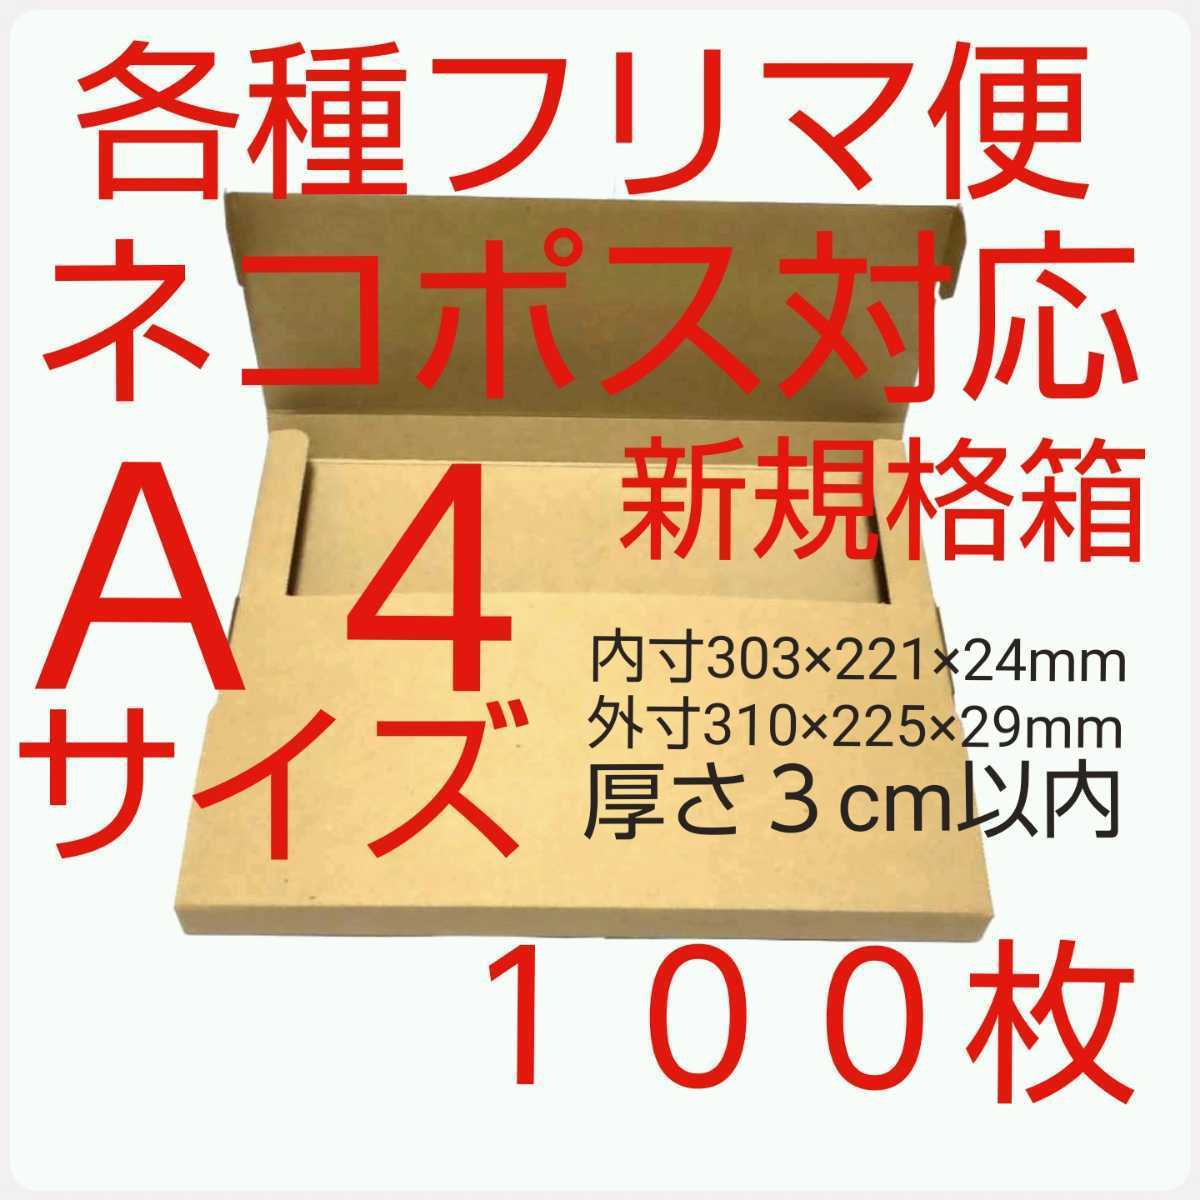 flima рейс кошка pohs *.. пачка * клик post для упаковка материал * сборка маленький коробка сделано в Японии 